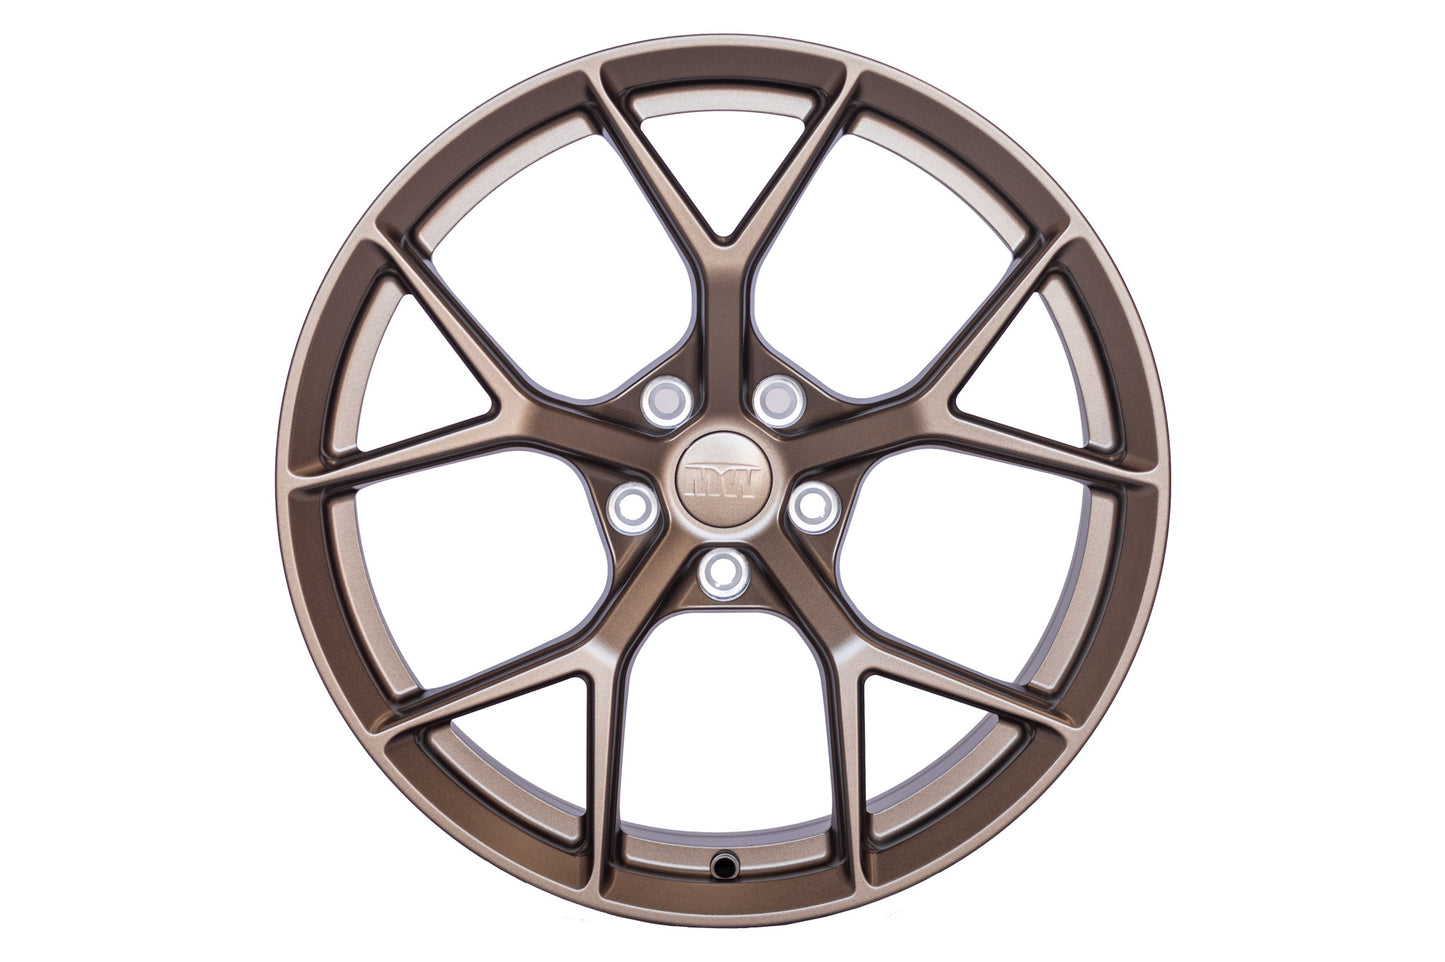 18x8.0 Inch MW05 Forged Wheels For Tesla Model 3 / Model Y